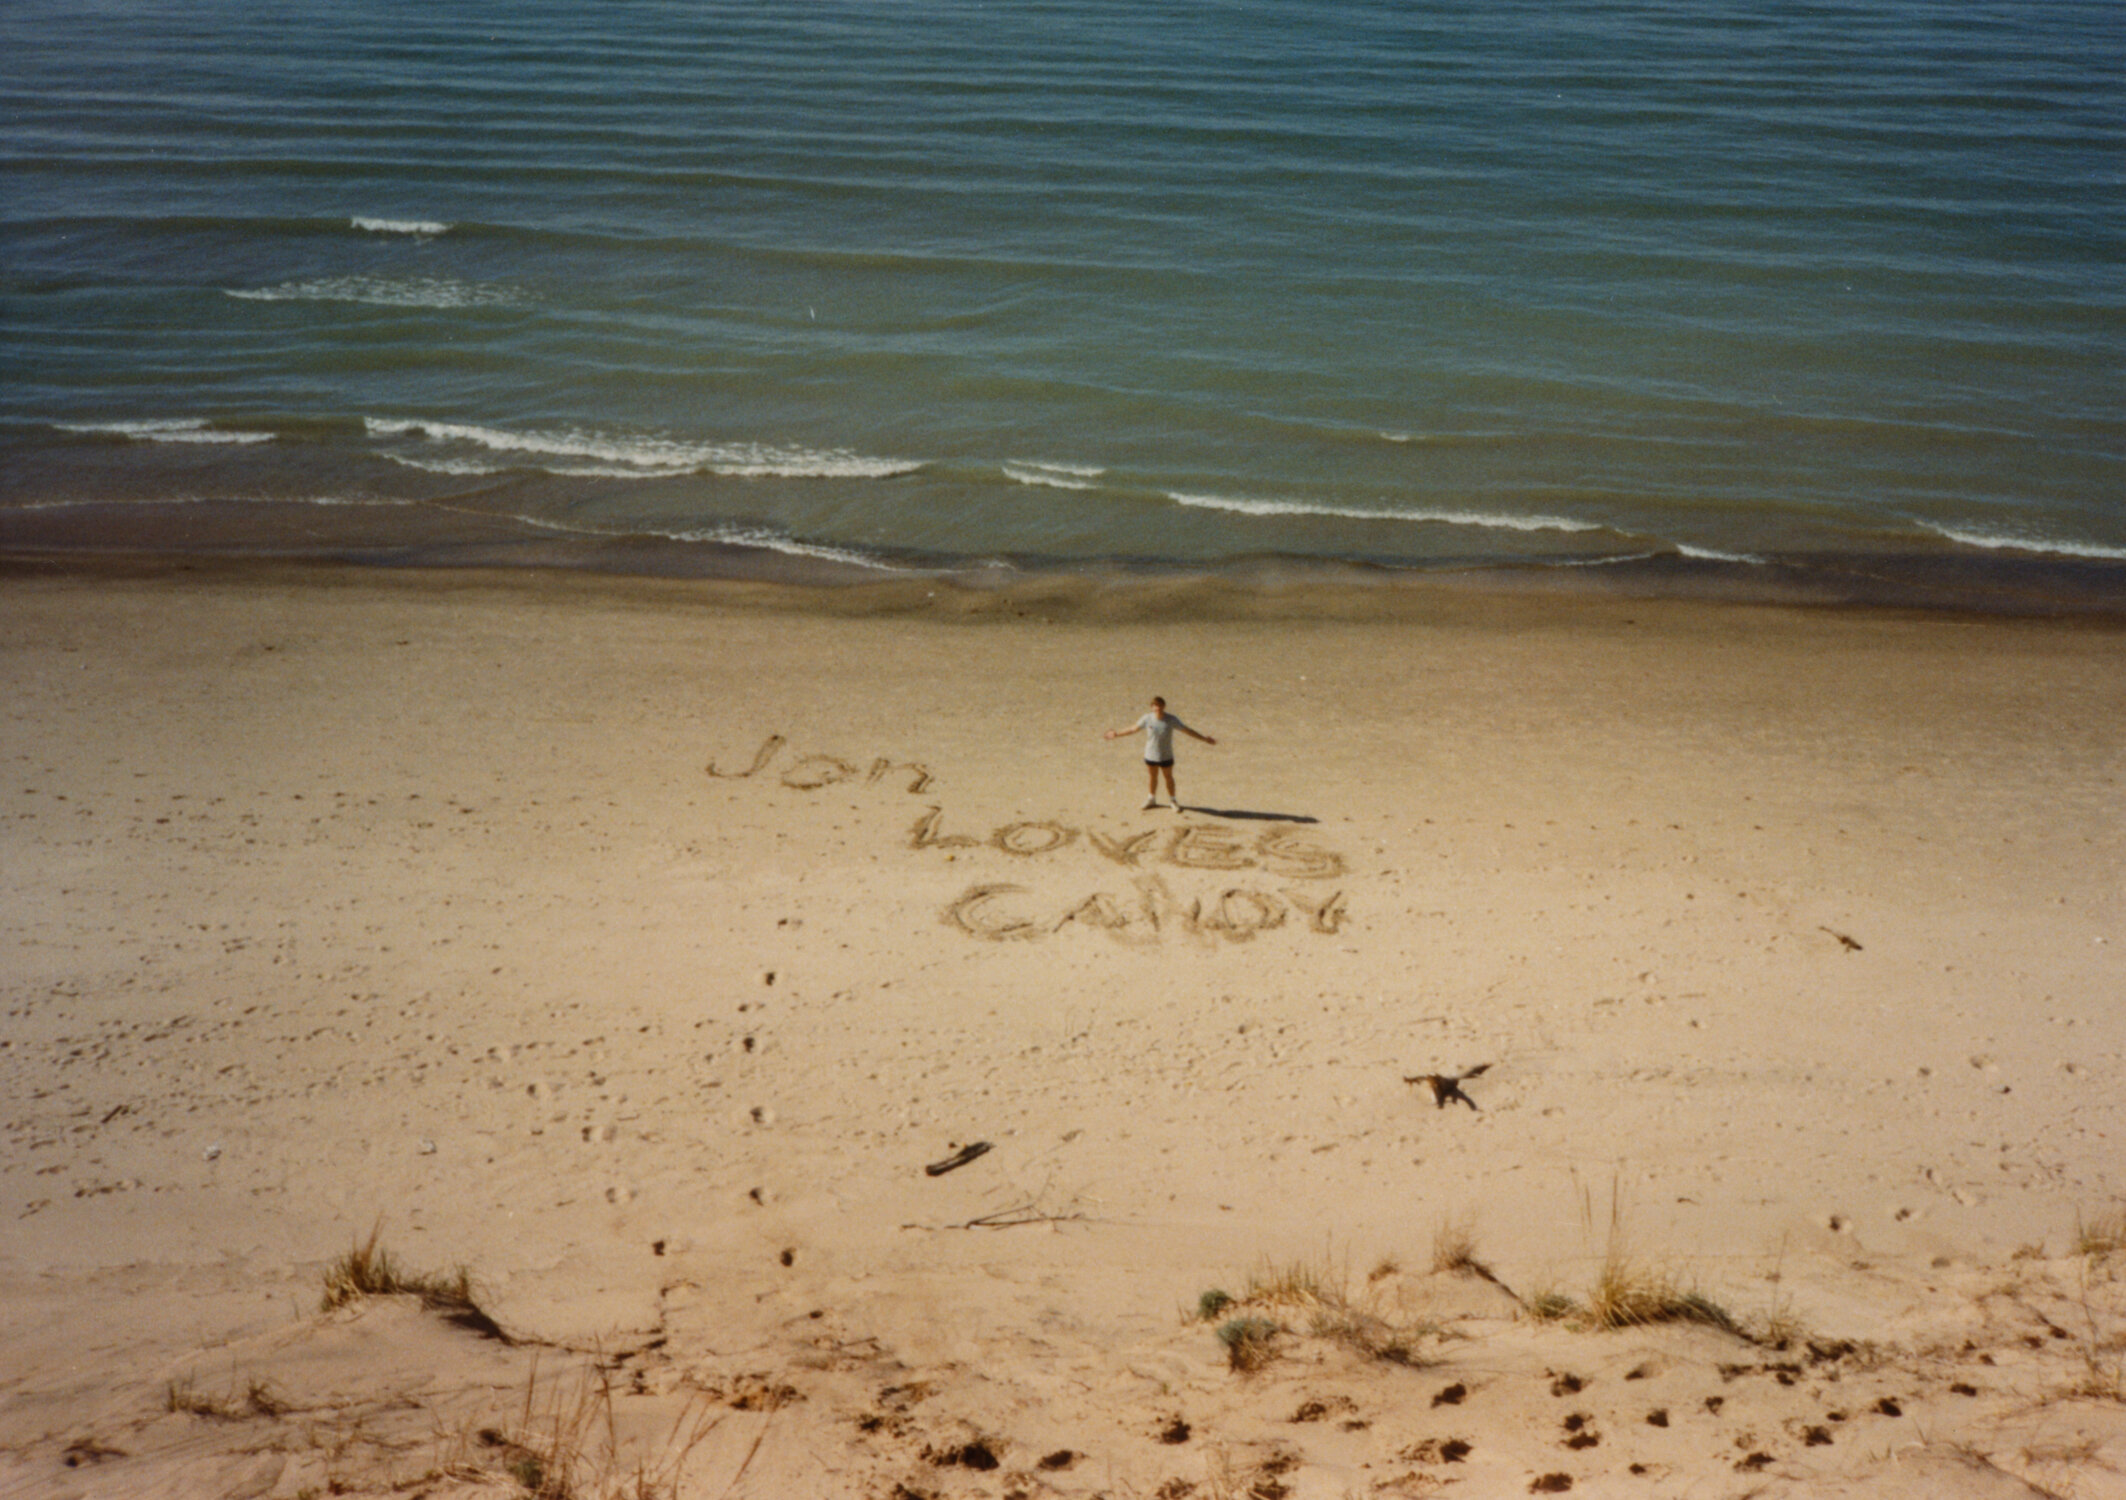 19880500 Candy + Jon T Indiana Dunes - 02 - Jon T.jpg